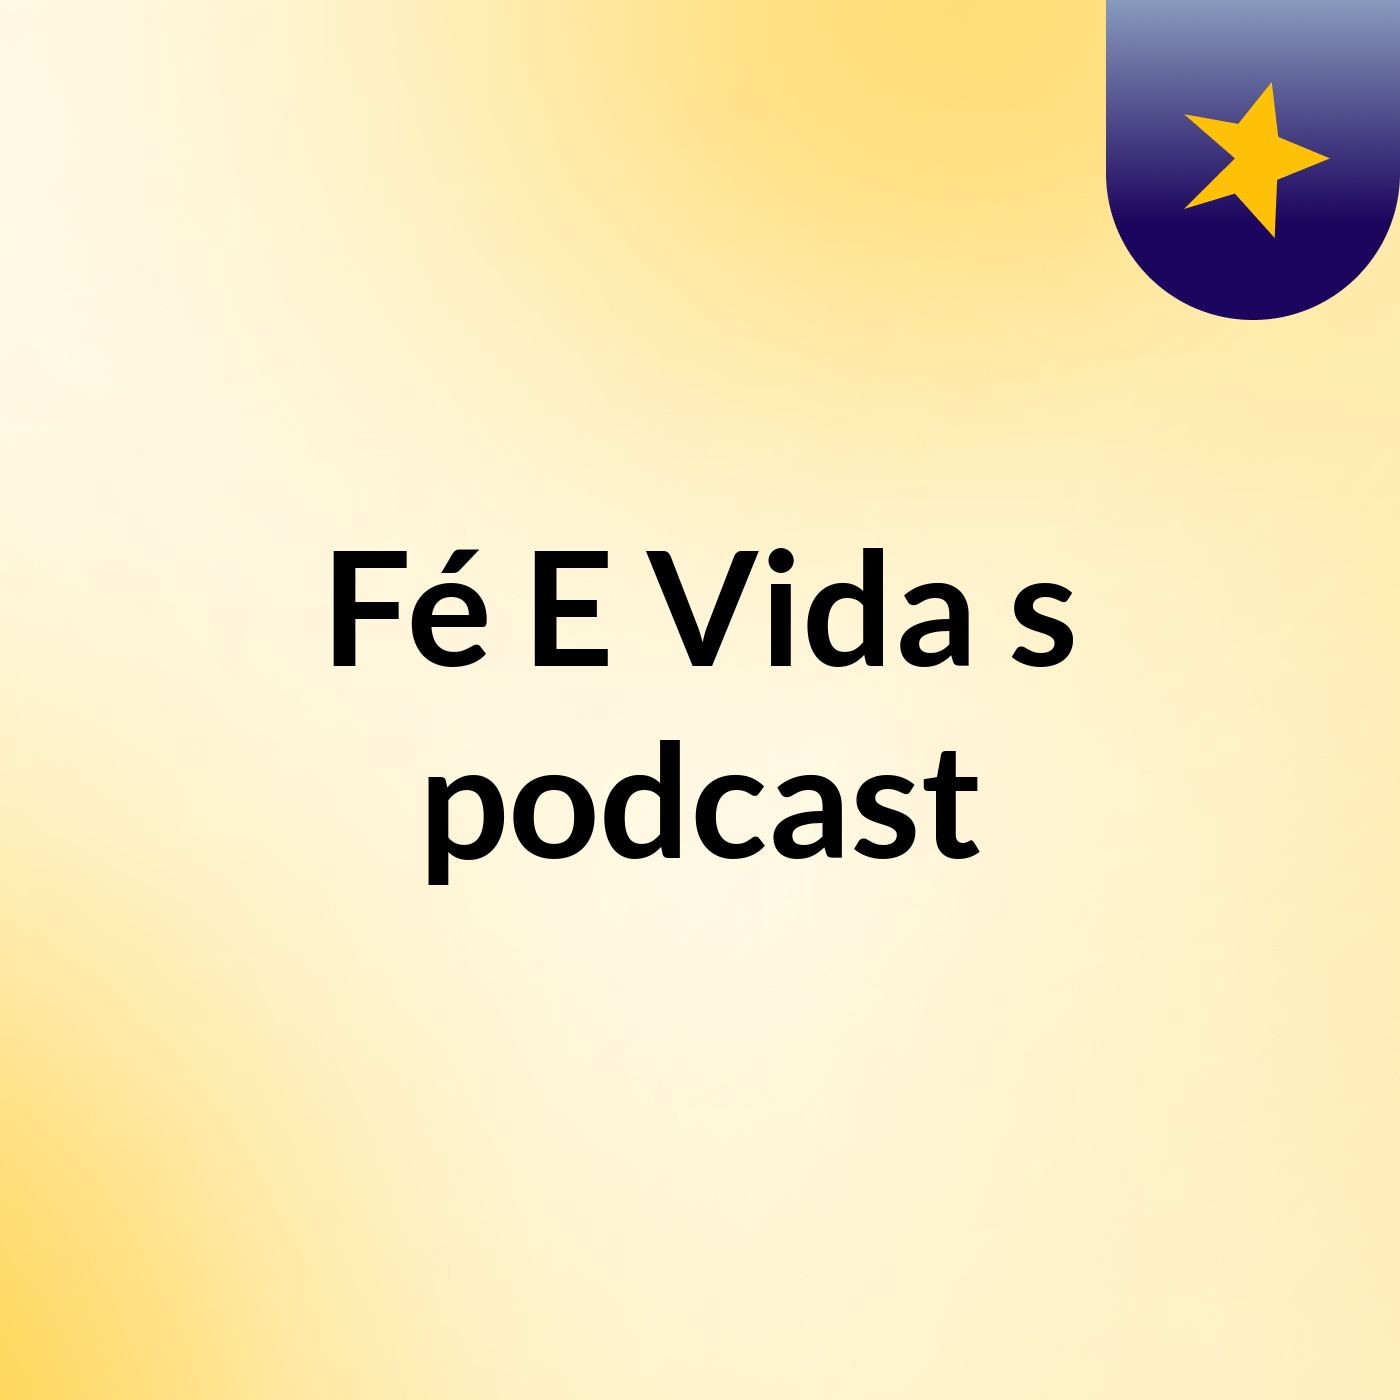 Fé E Vida's podcast